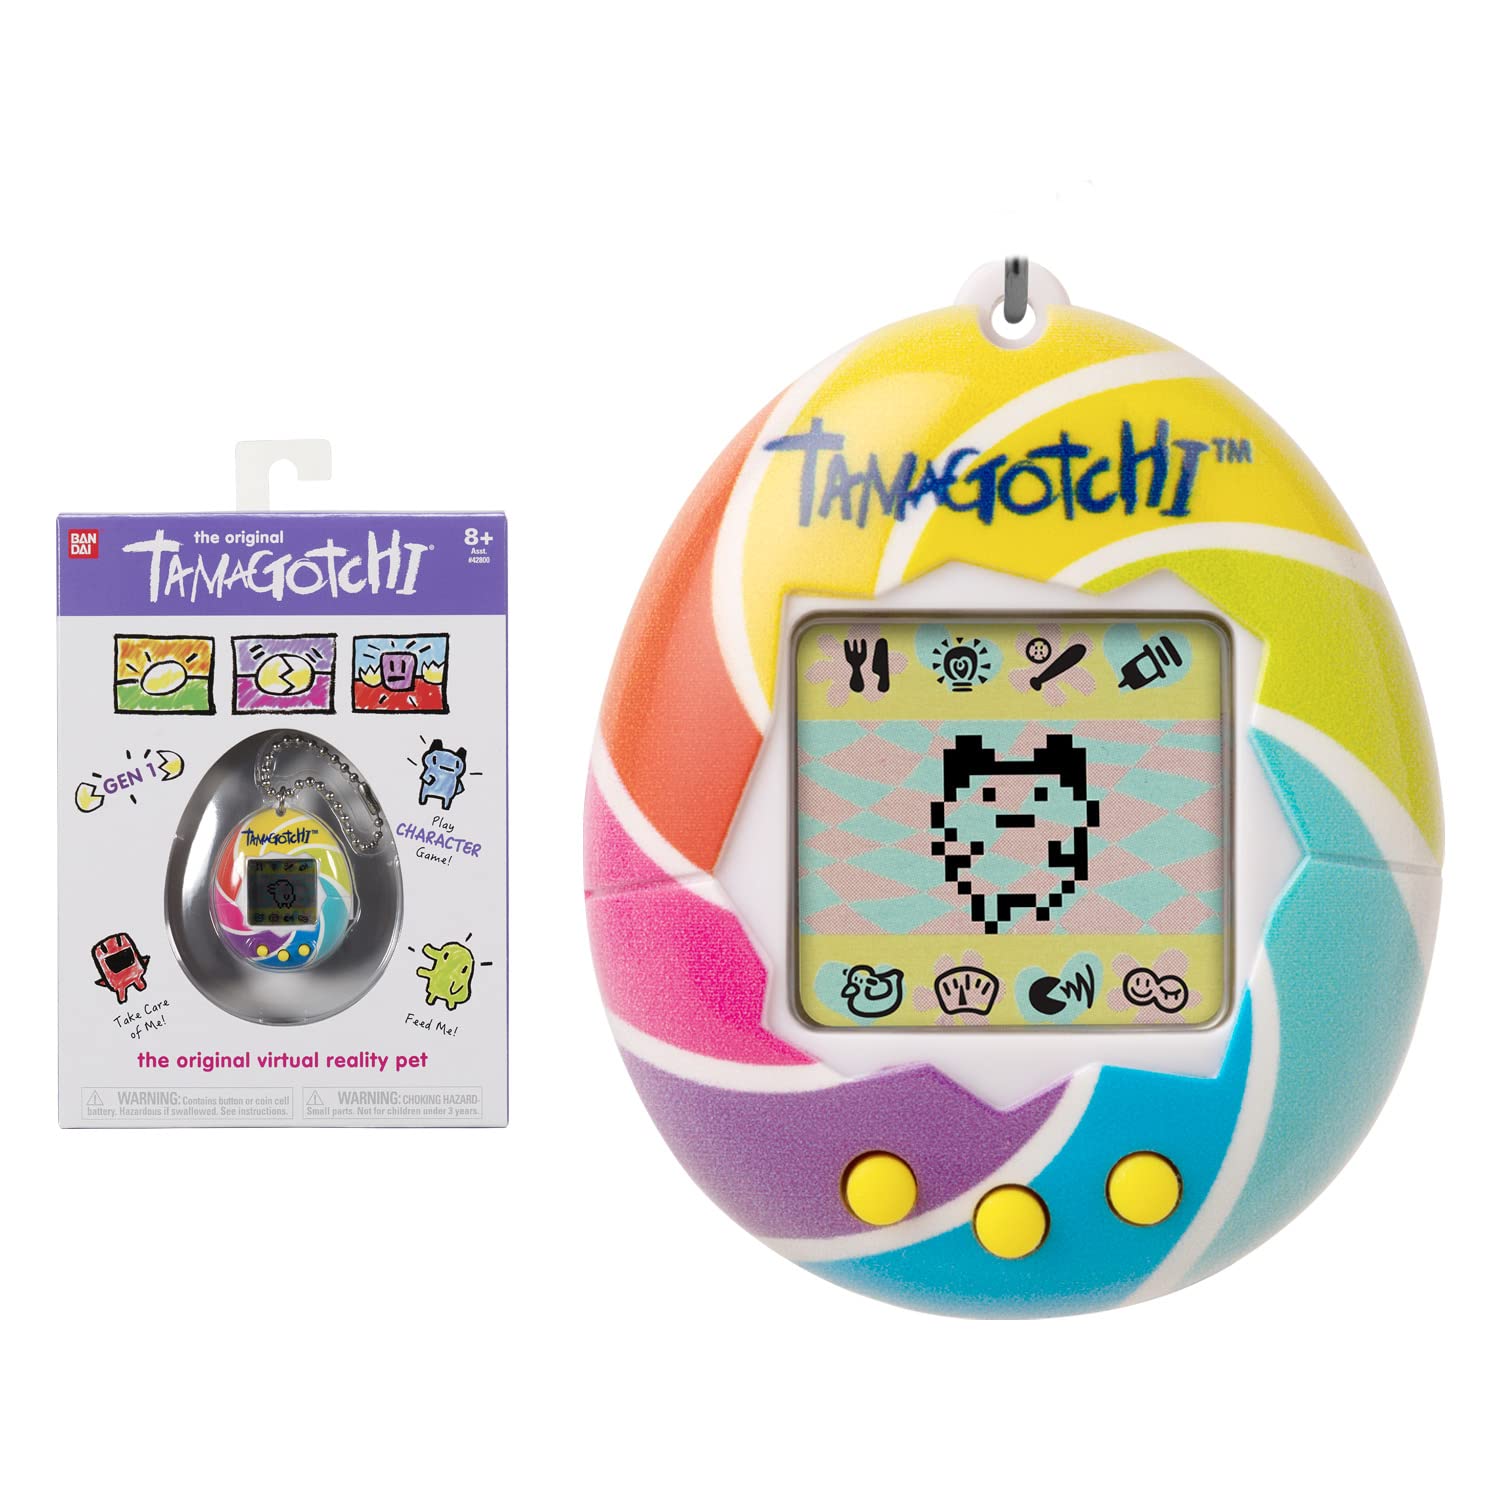 Achat Bandai - Tamagotchi - Tamagotchi original - Candy Swirl - Animal électronique virtuel avec écran, 3 boutons et jeux - 42879 XTn7xhQjb frais